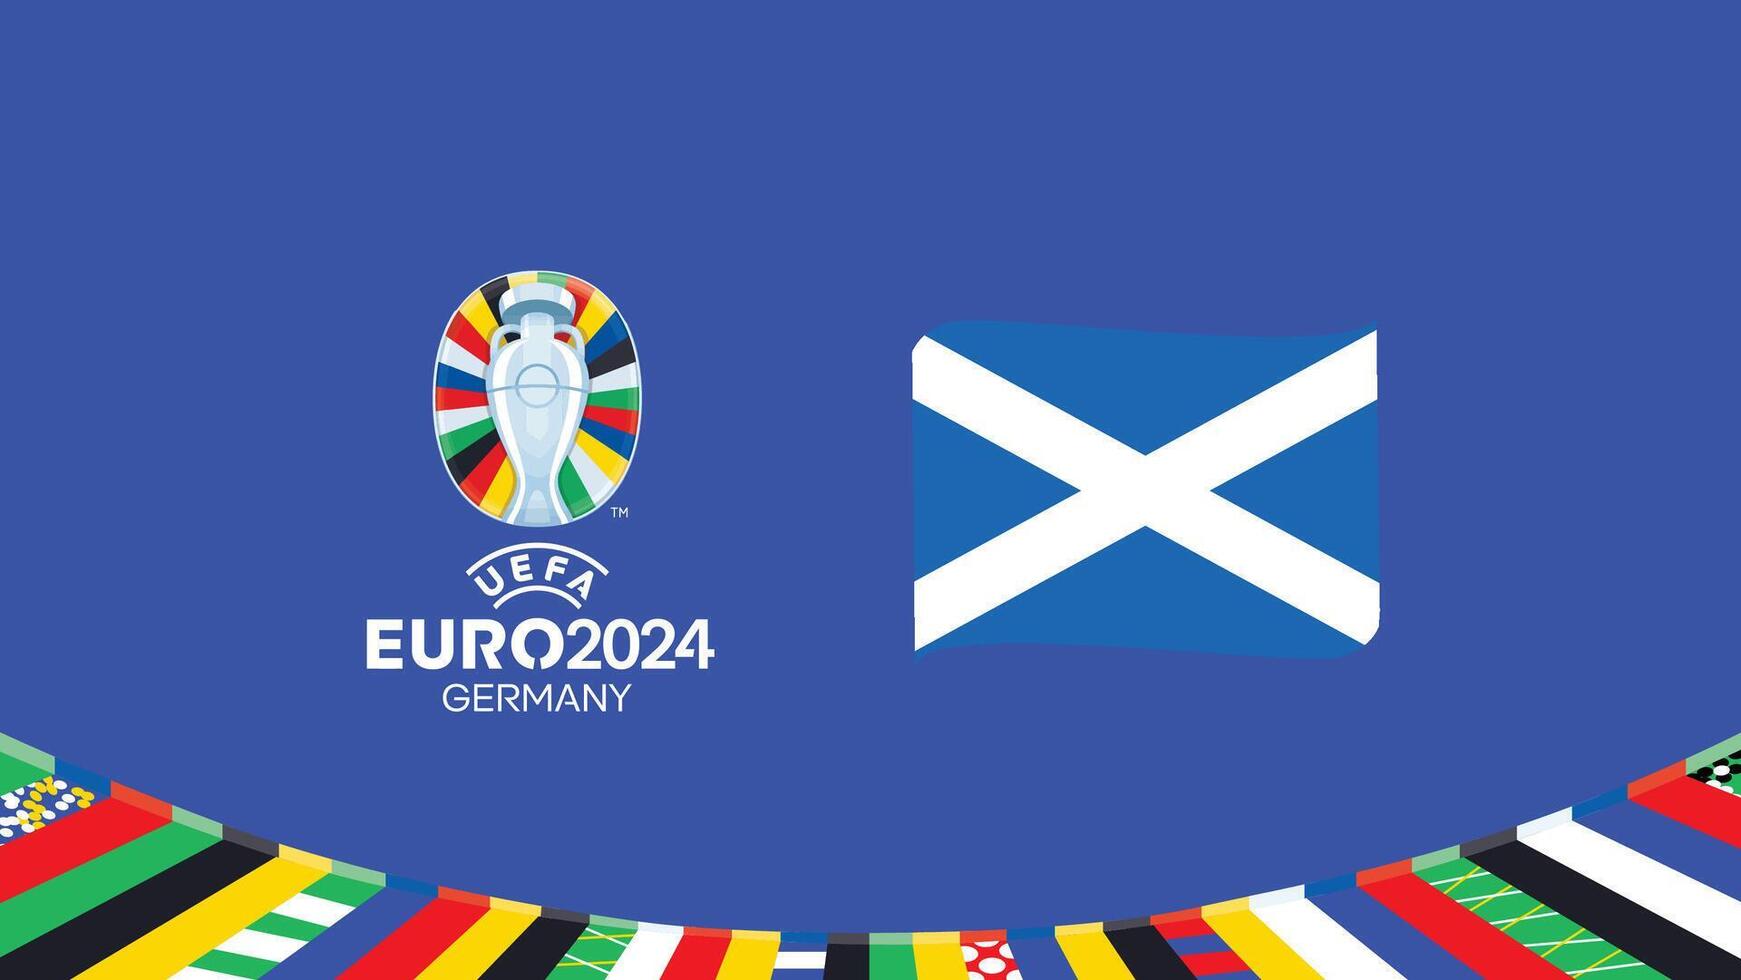 euro 2024 Escócia bandeira fita equipes Projeto com oficial símbolo logotipo abstrato países europeu futebol ilustração vetor